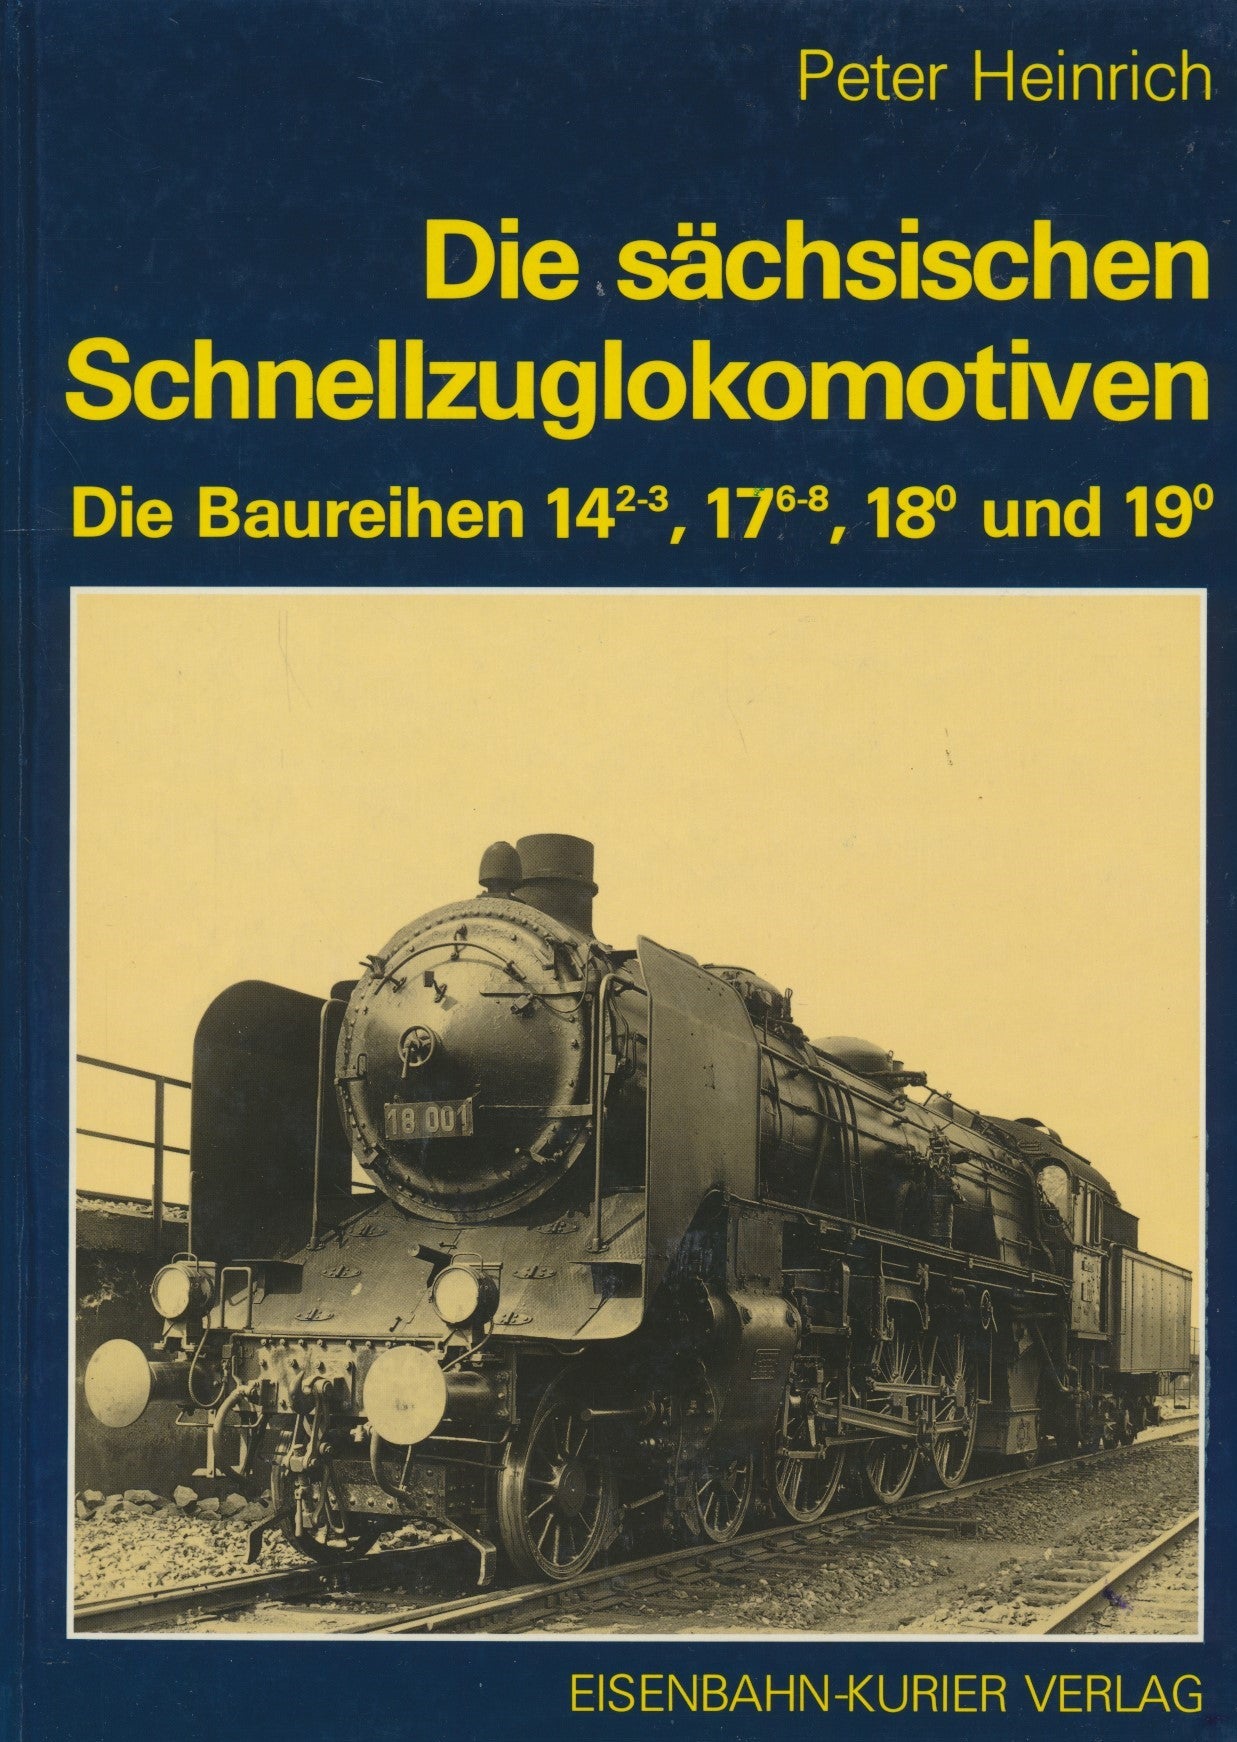 Die Sachsische Schnellzuglokomotiven: Band 1